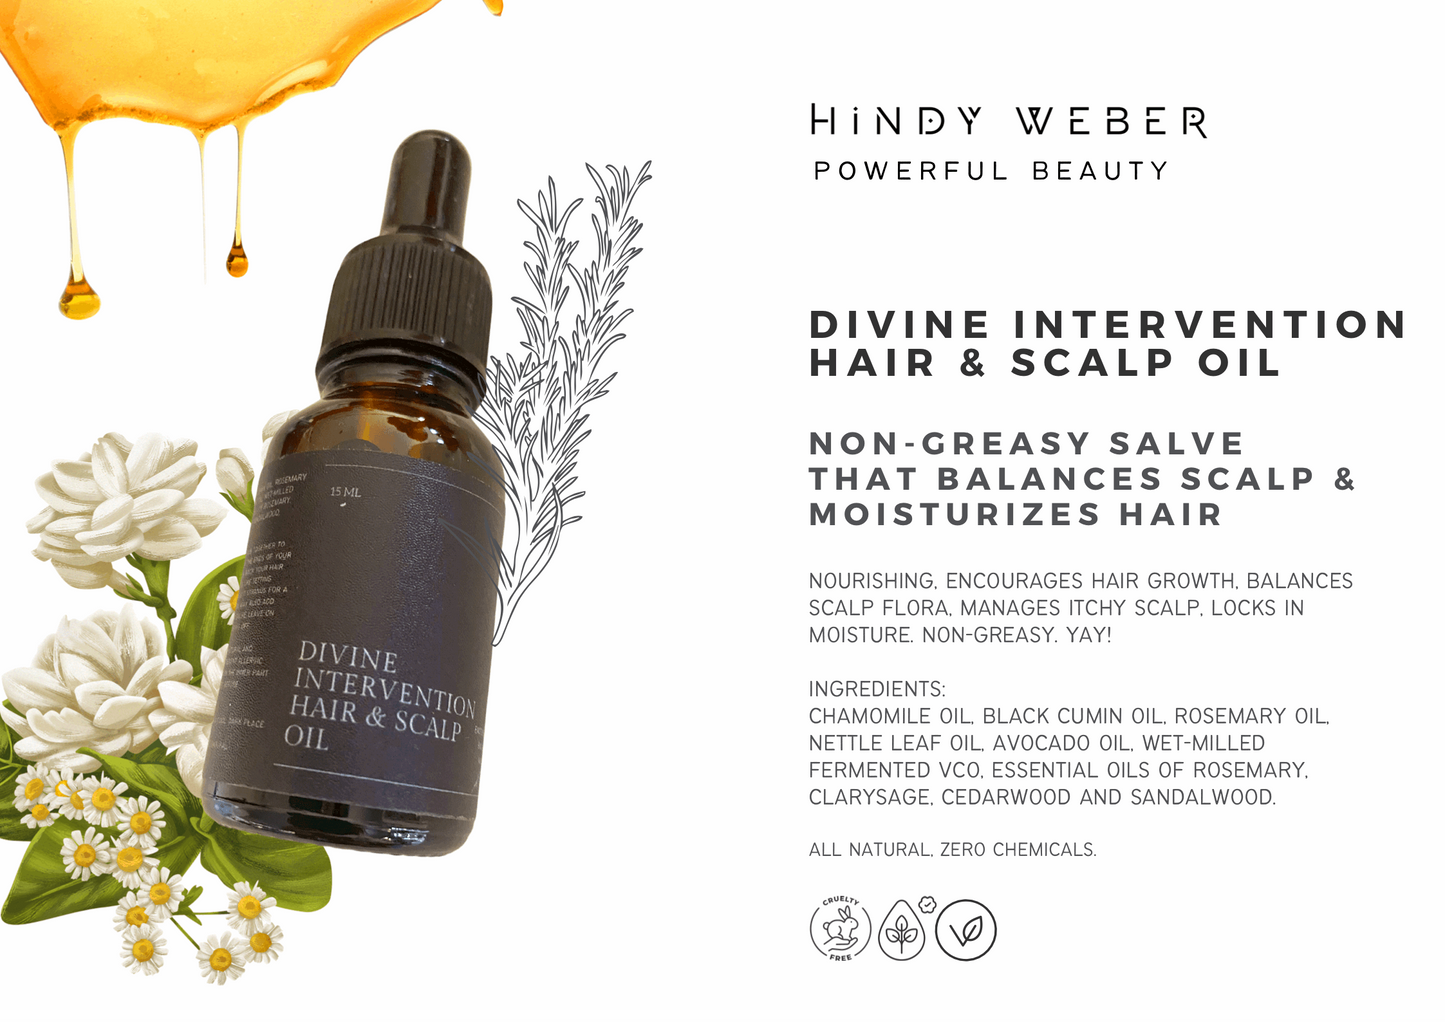 Divine Intervention Hair & Scalp Oil